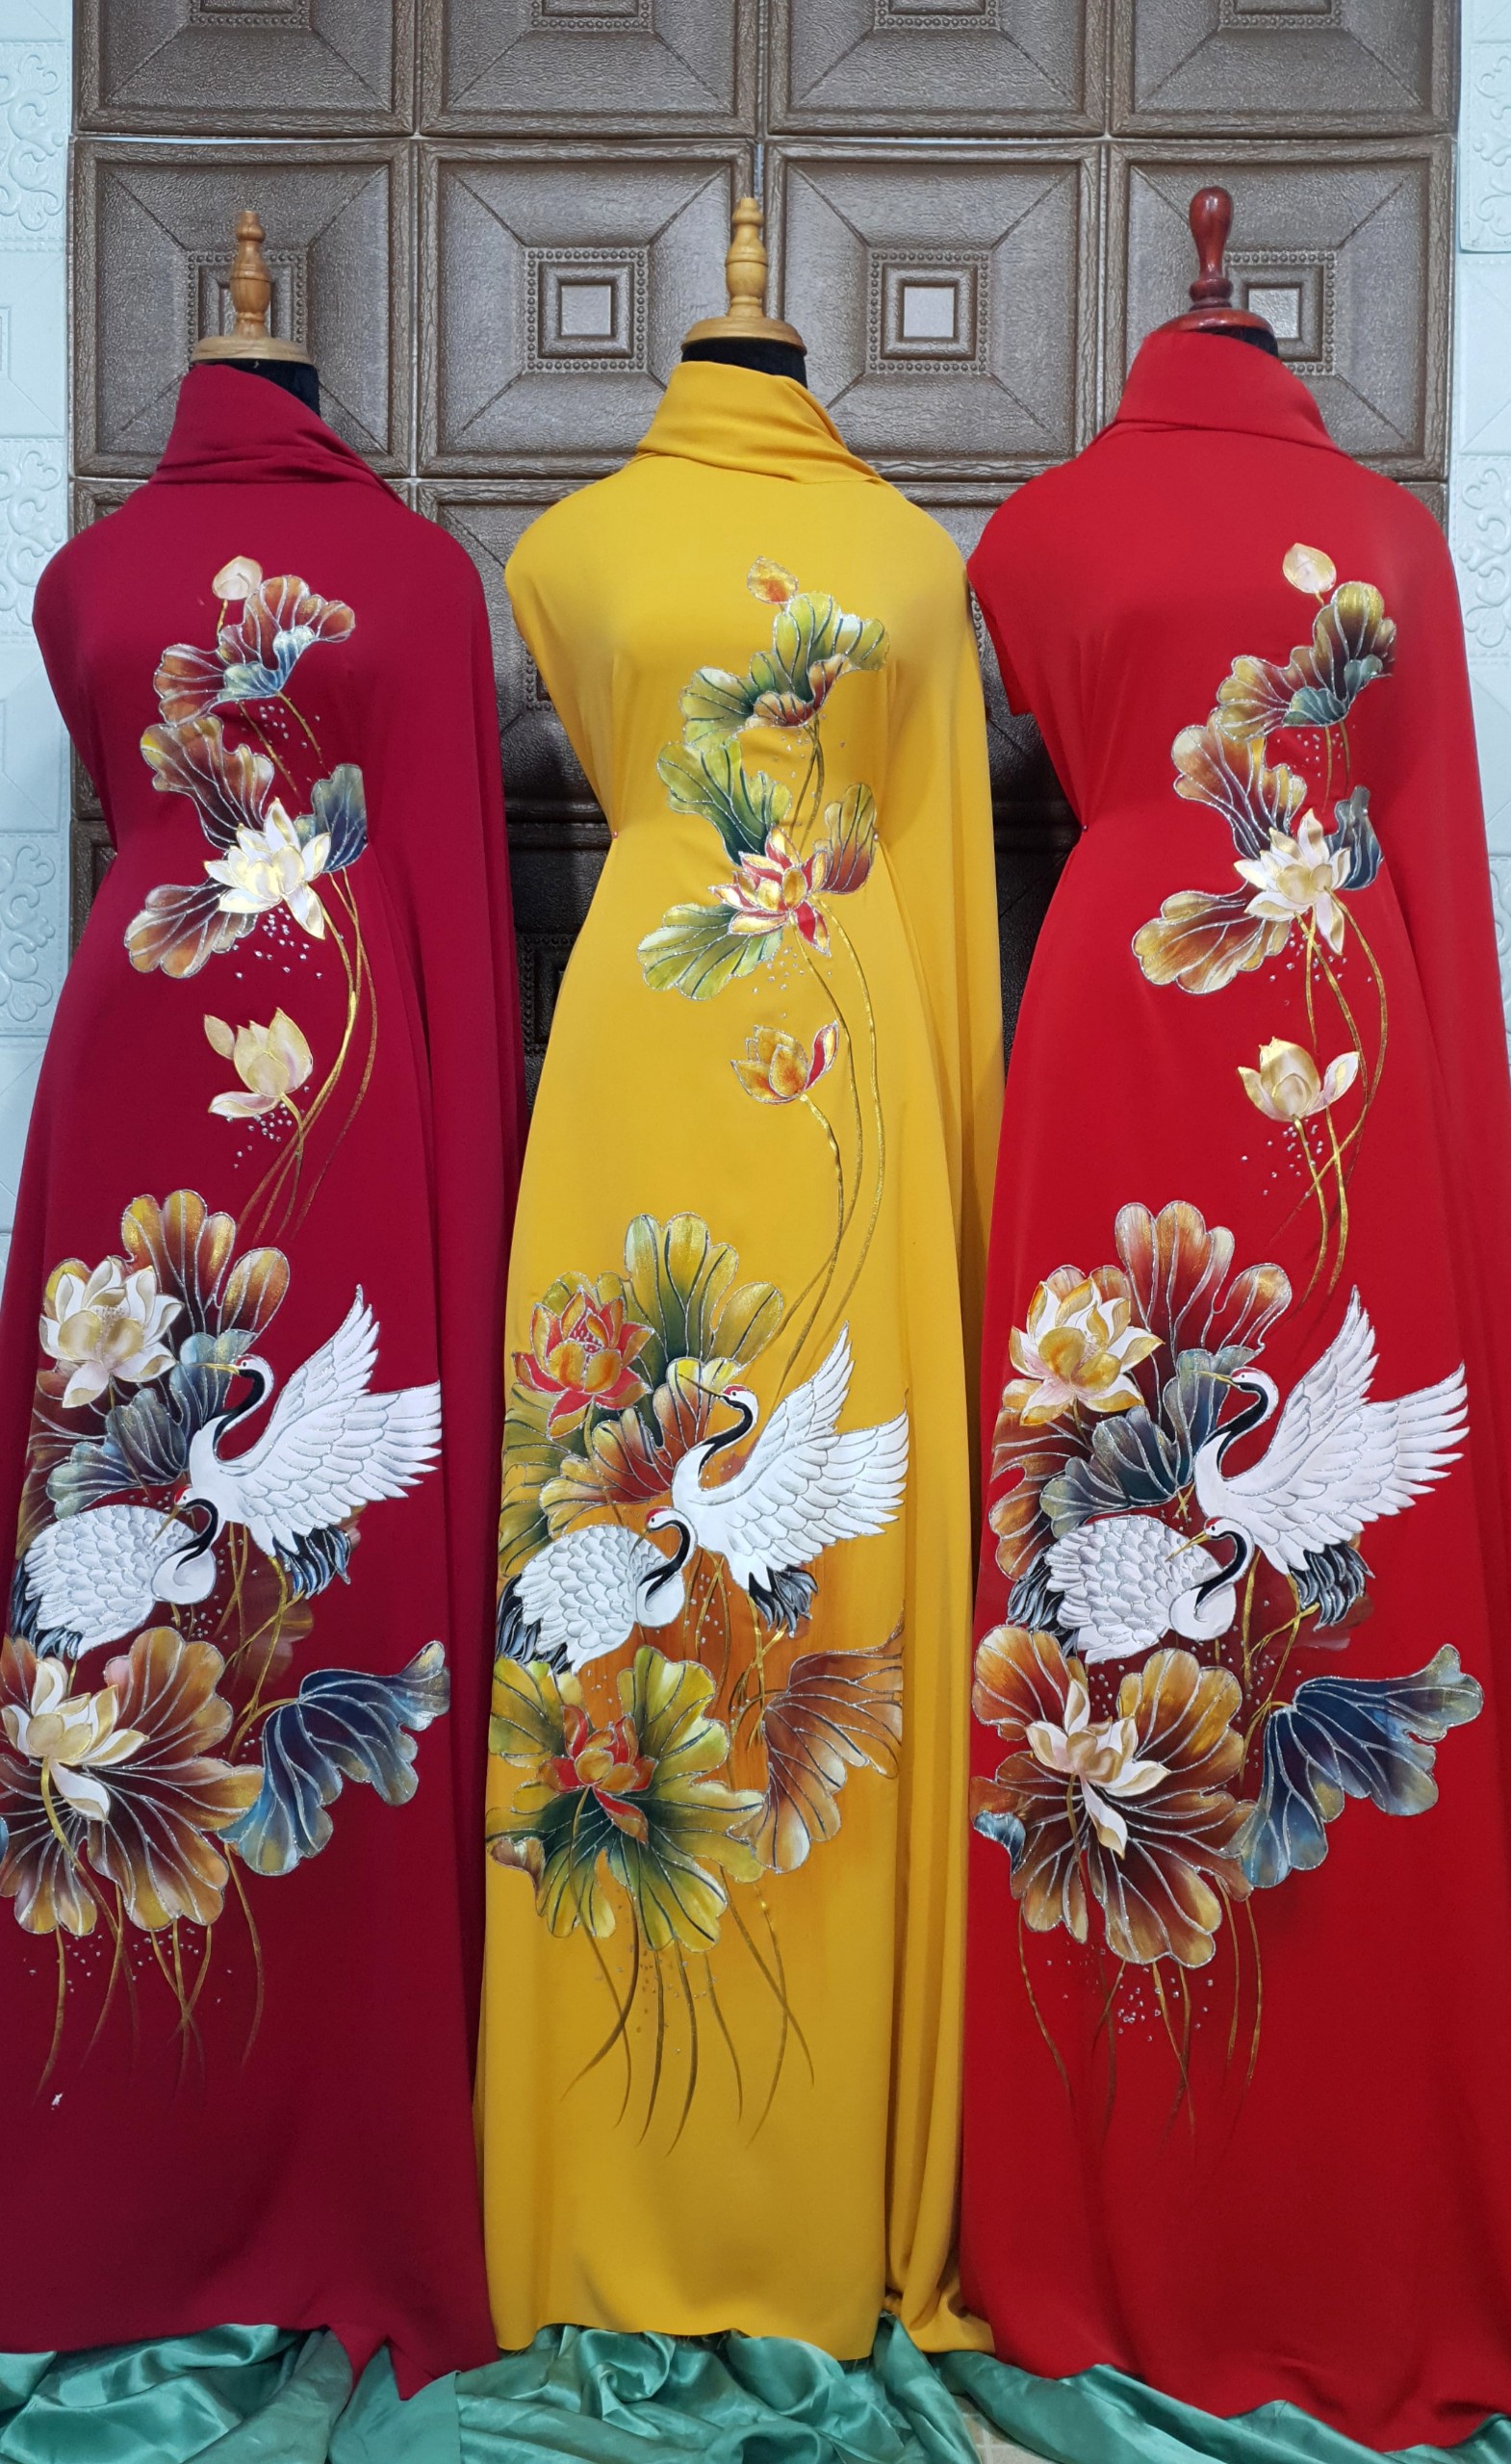 Áo chim hạc là một trong những mẫu áo dài đặc trưng của nền văn hóa truyền thống Việt Nam, kết hợp giữa sự thanh lịch và tinh tế. Hãy click vào hình ảnh liên quan để khám phá và cập nhật những xu hướng mới nhất về áo chim hạc.